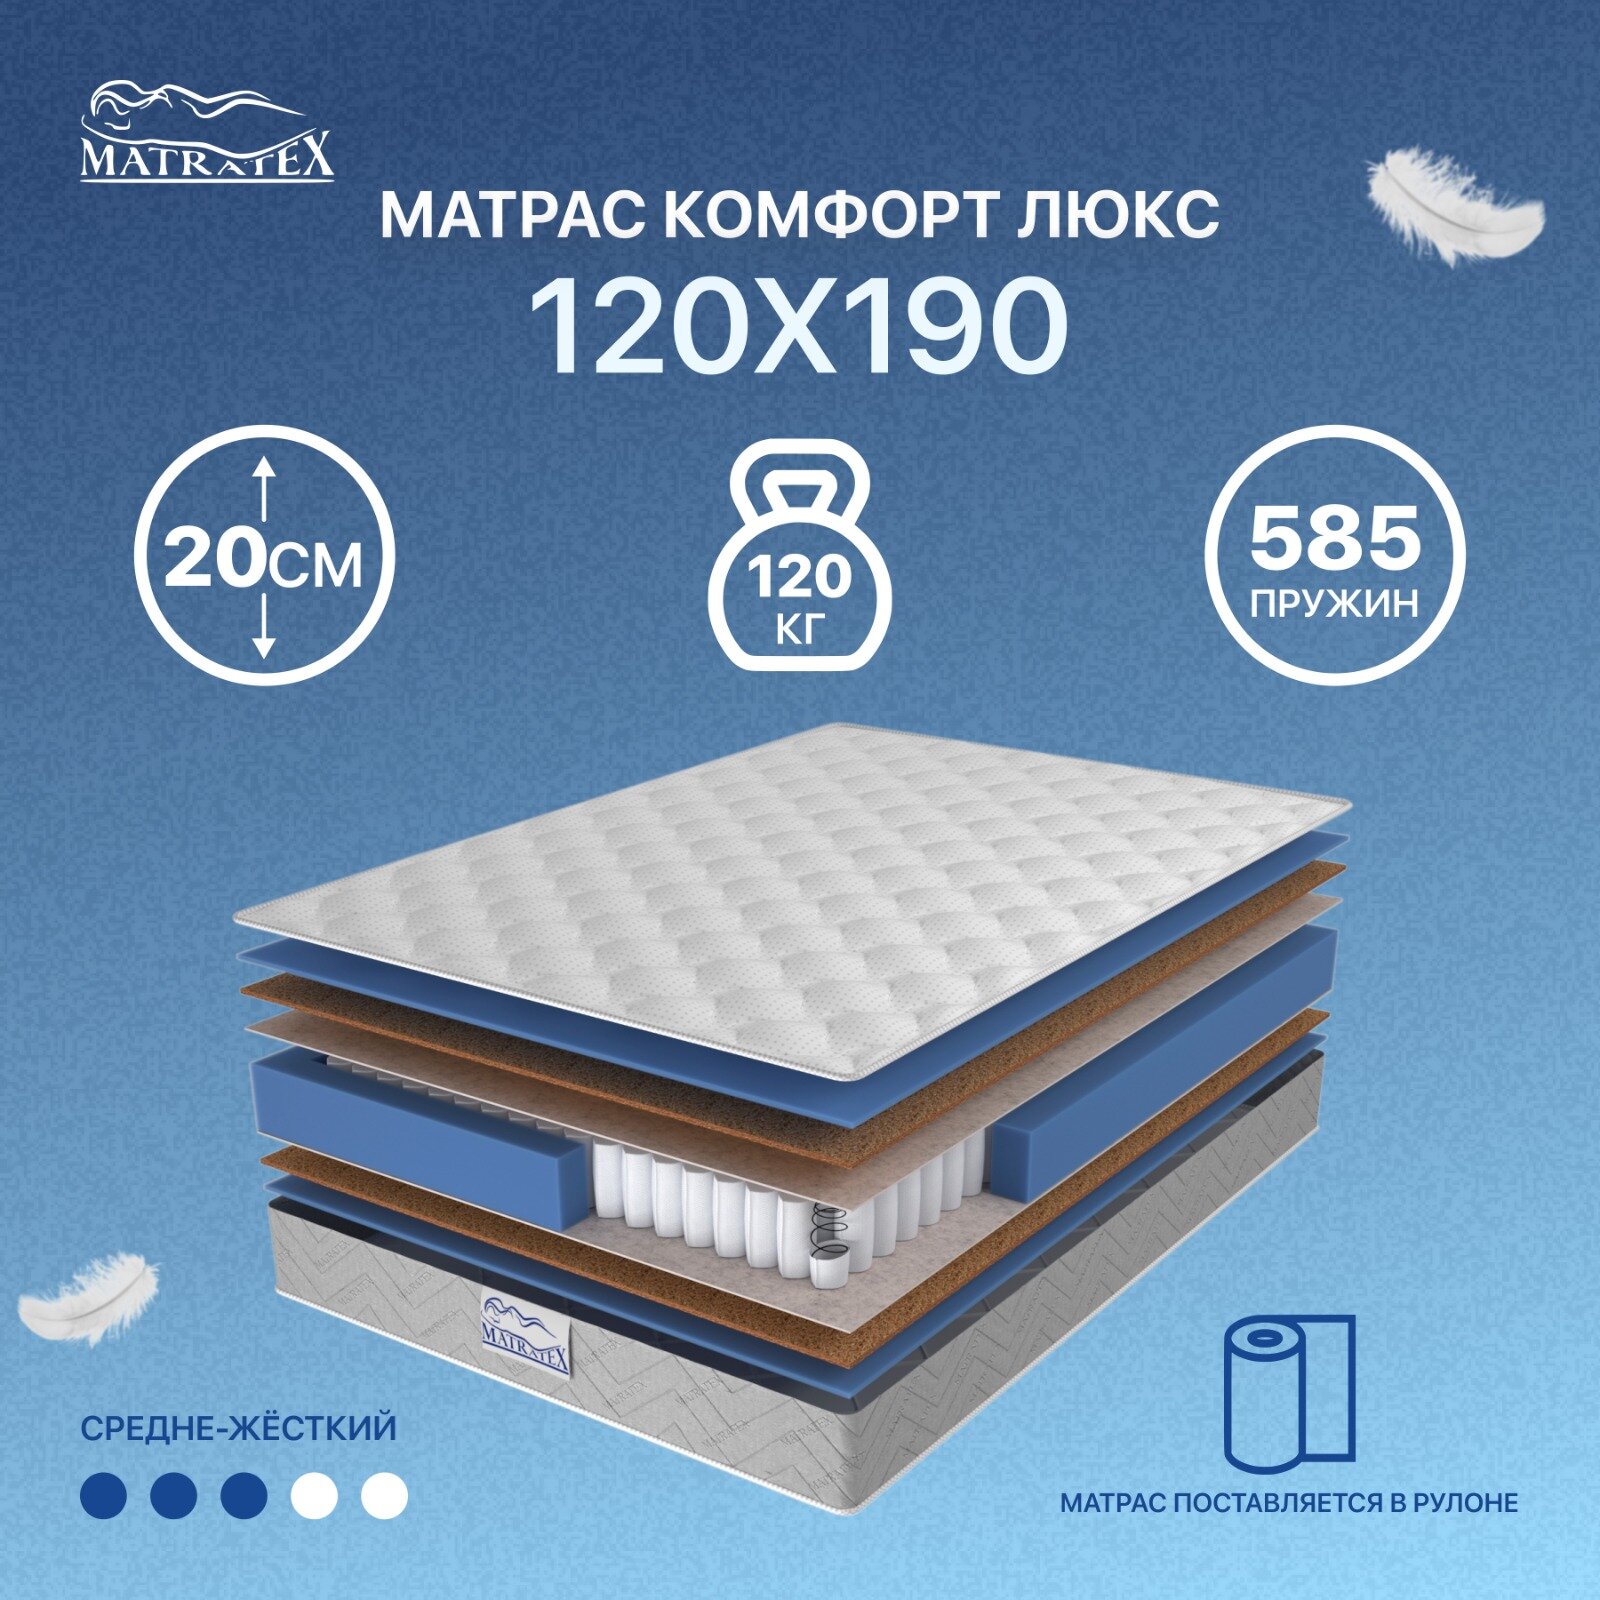 Матрас MATRATEX комфорт люкс 120х190